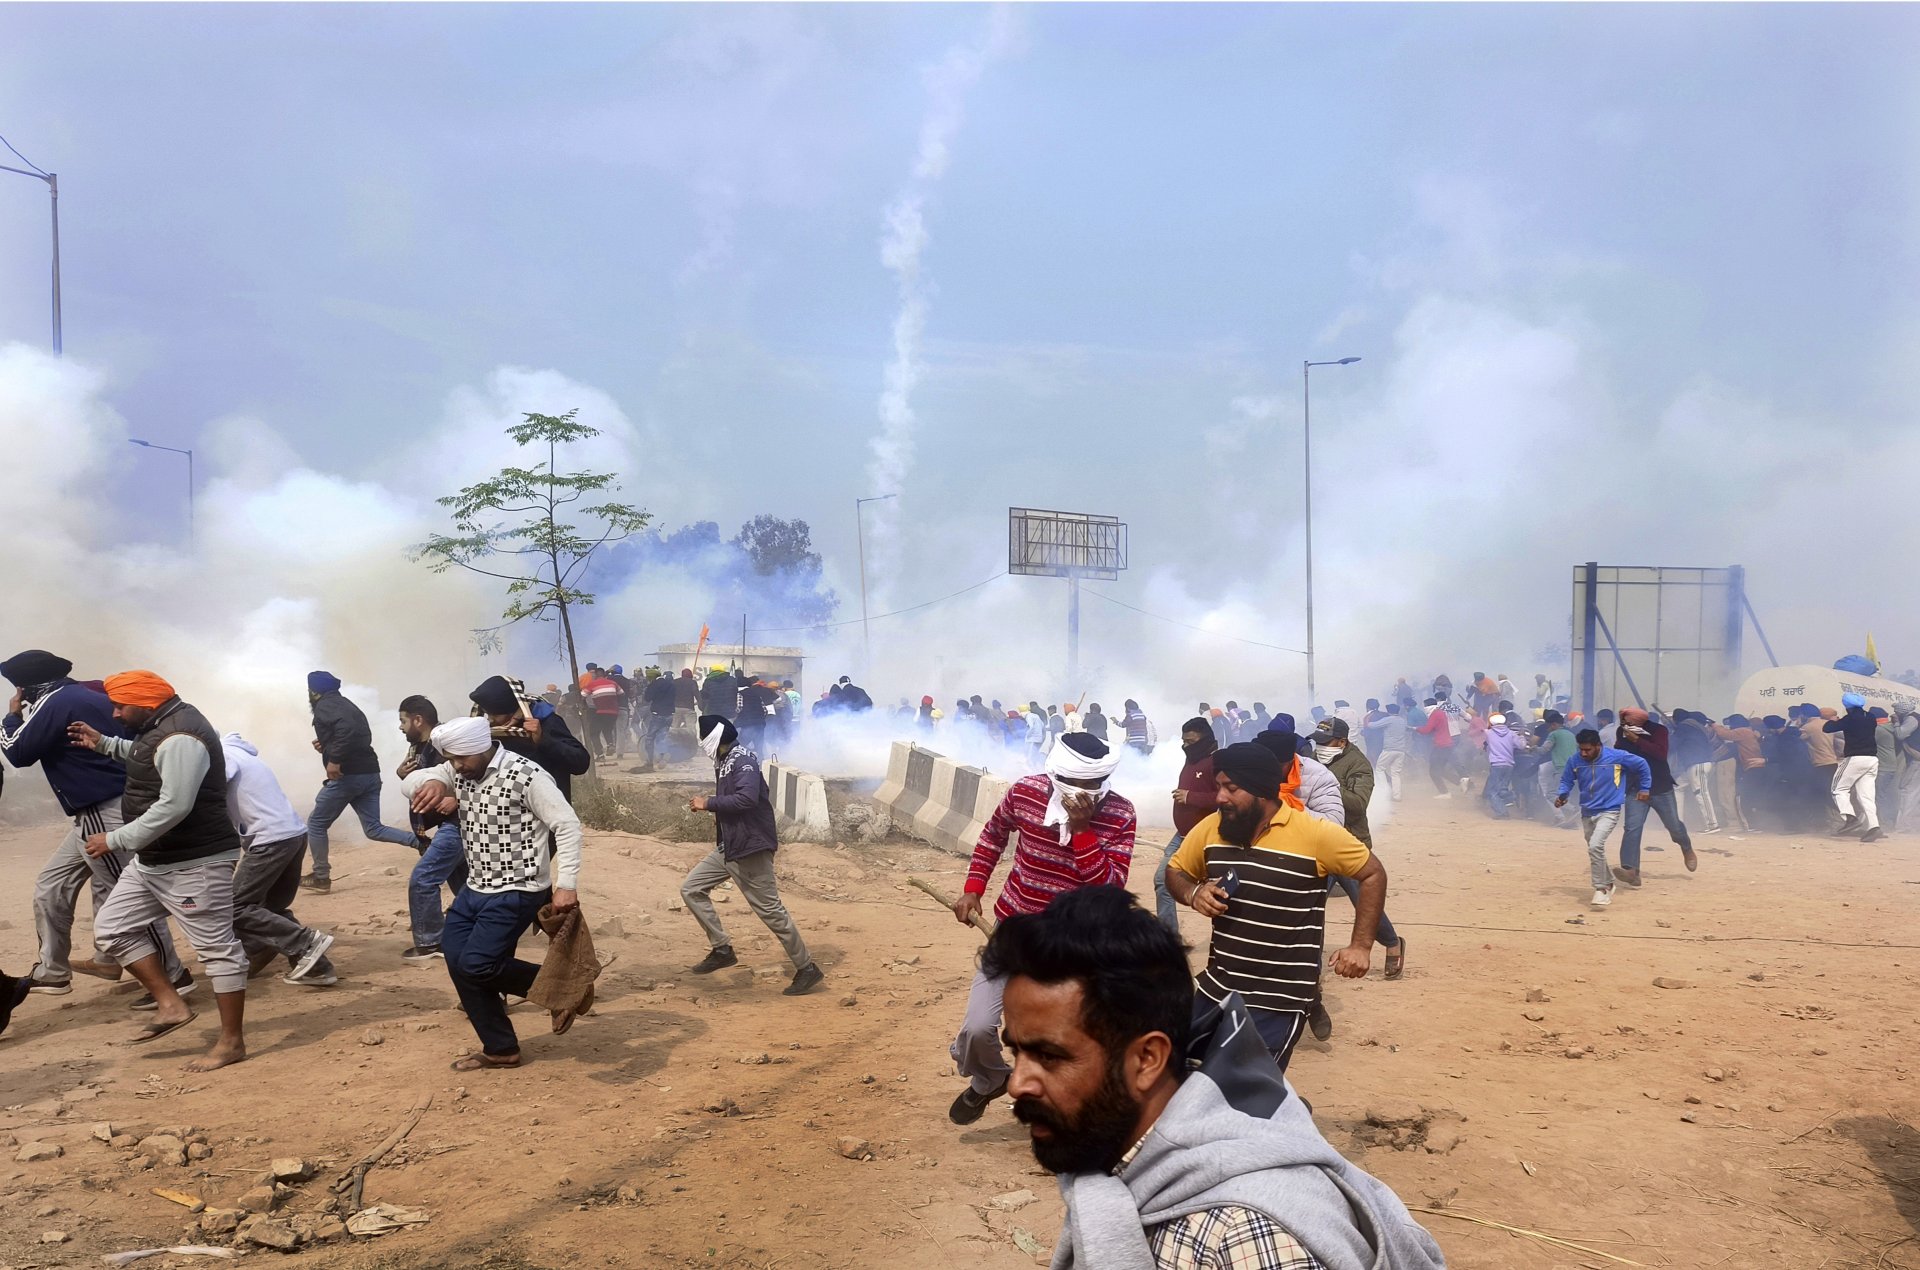 Фермери търсят укритие, след като индийската полиция се опитва да ги разпръсне със сълзотворен газ